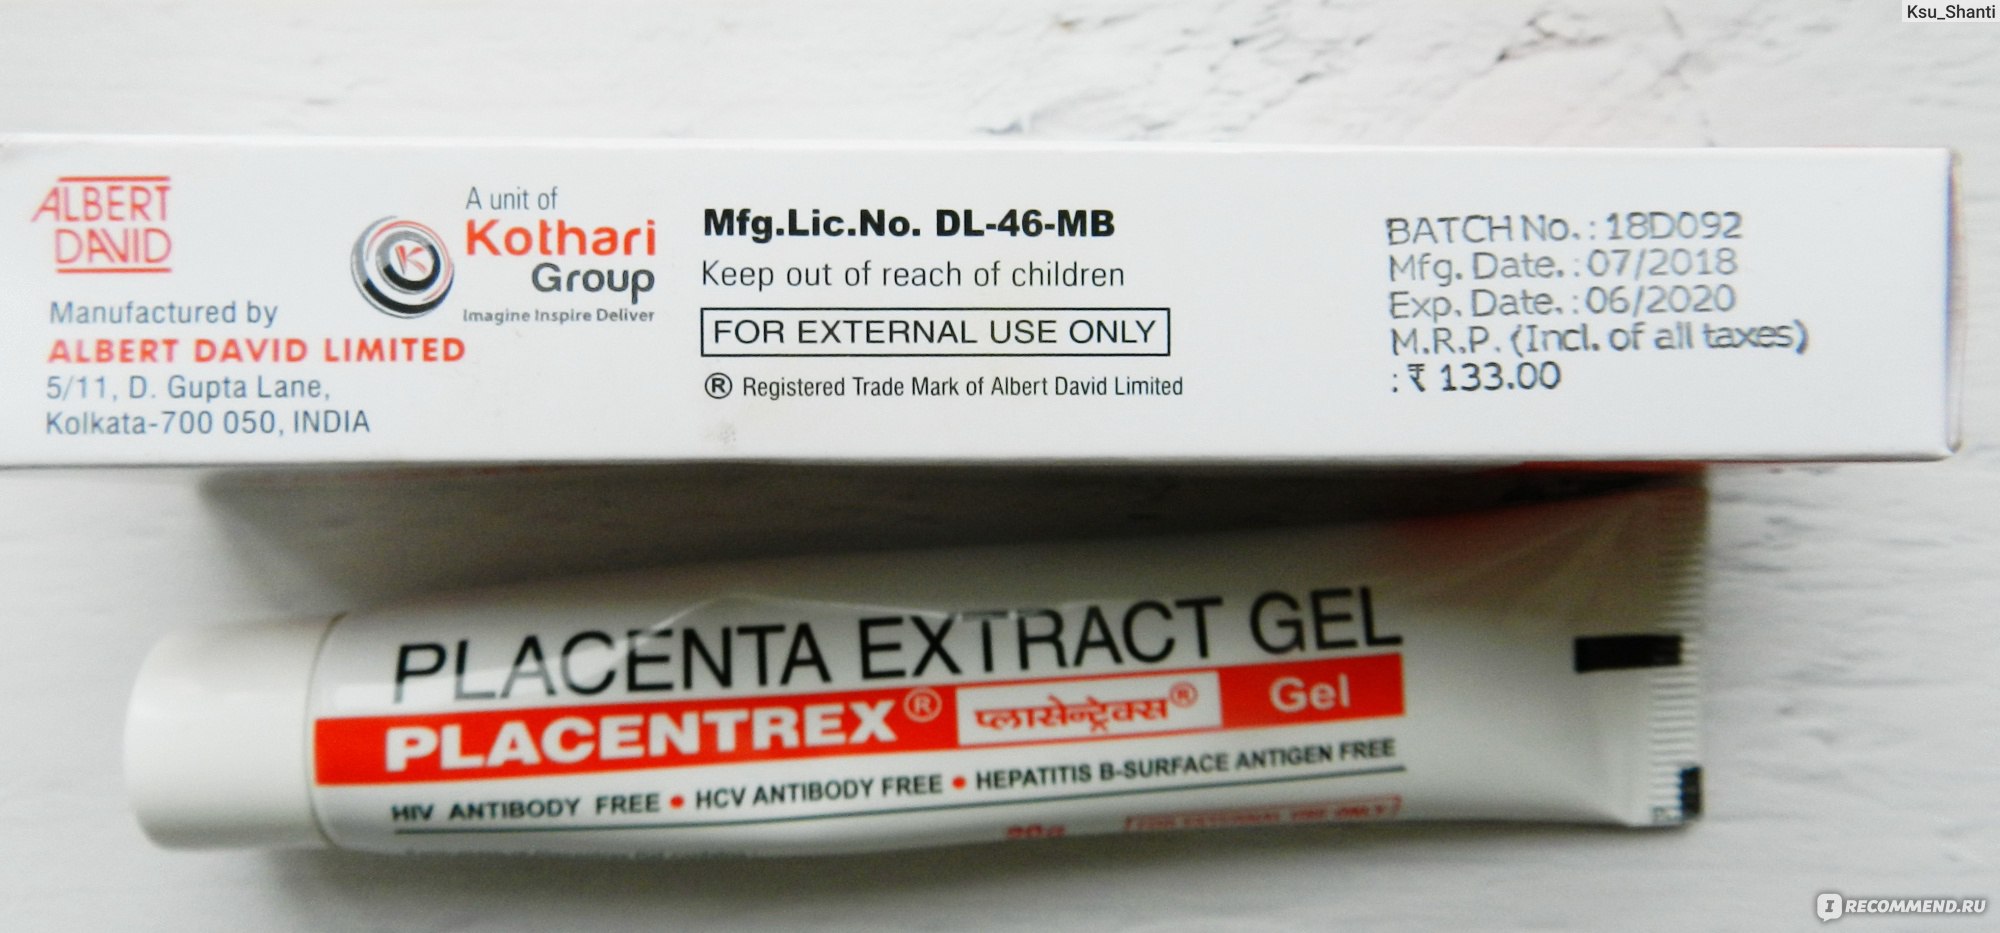 Плацентрекс placentrex gel. Индийский крем плацента.